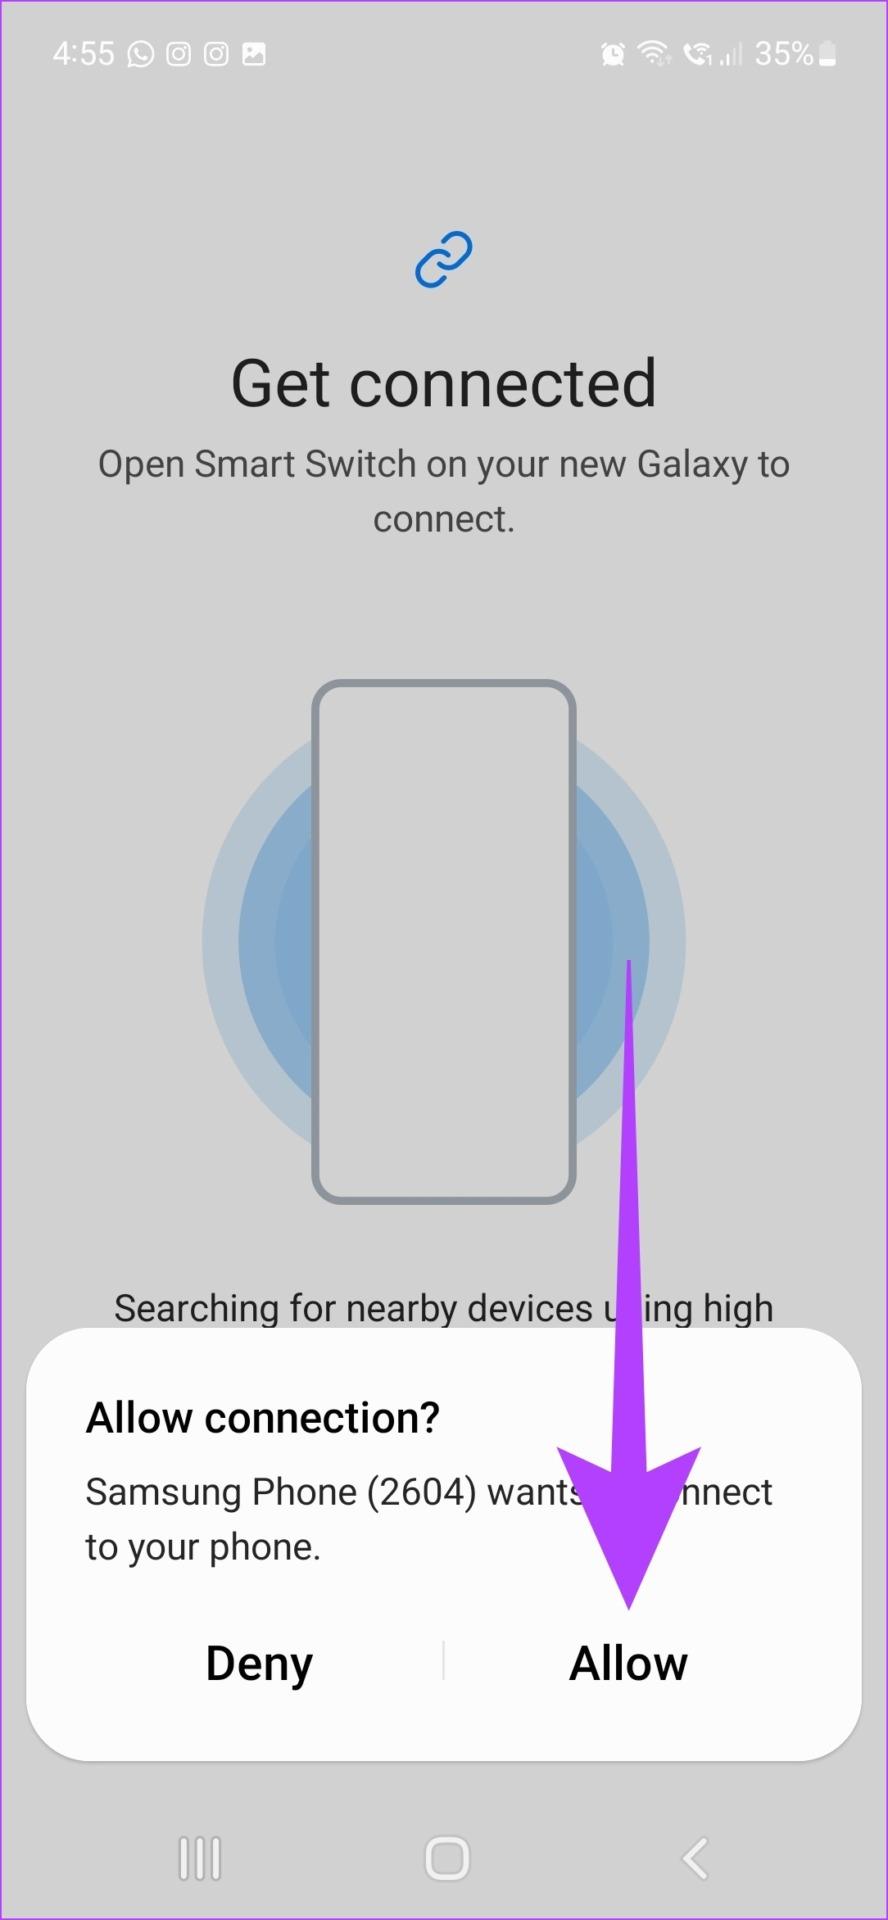 Como usar o Samsung Smart Switch para fazer backup e transferir dados em telefones Galaxy